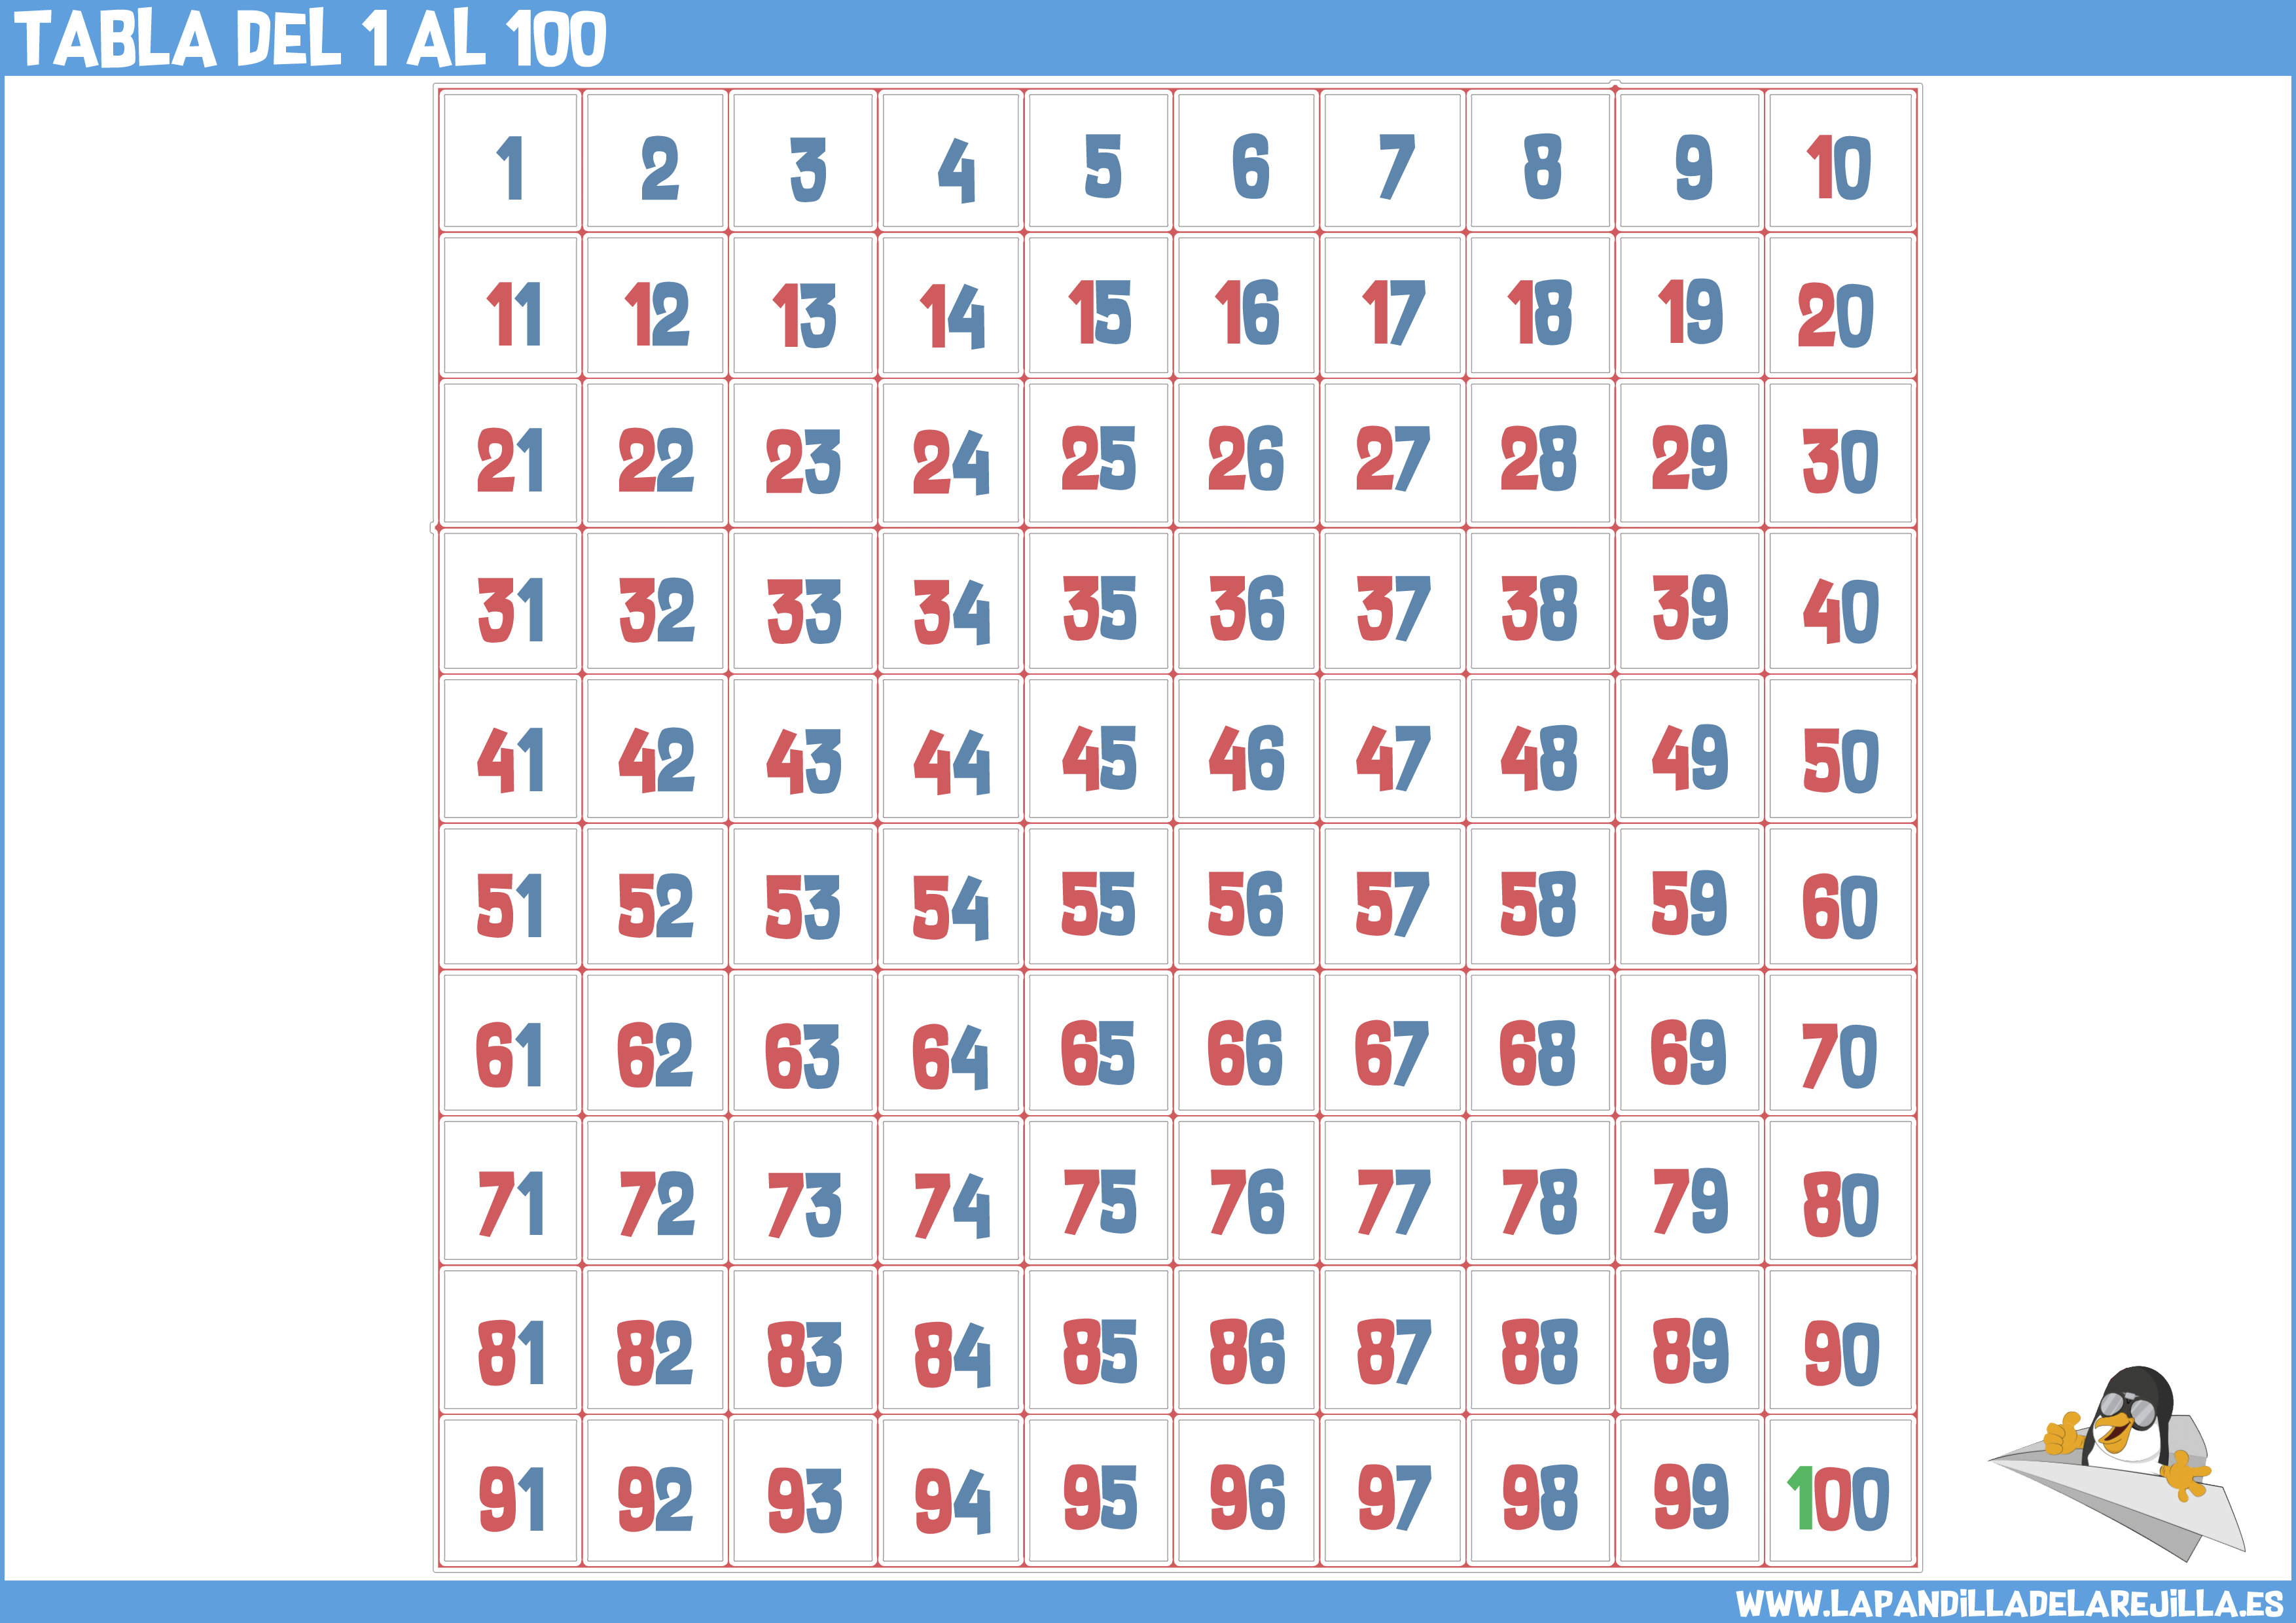 Tabla del 100 ABN - Plantillas de la tabla del 100 para descargar e imprimir.